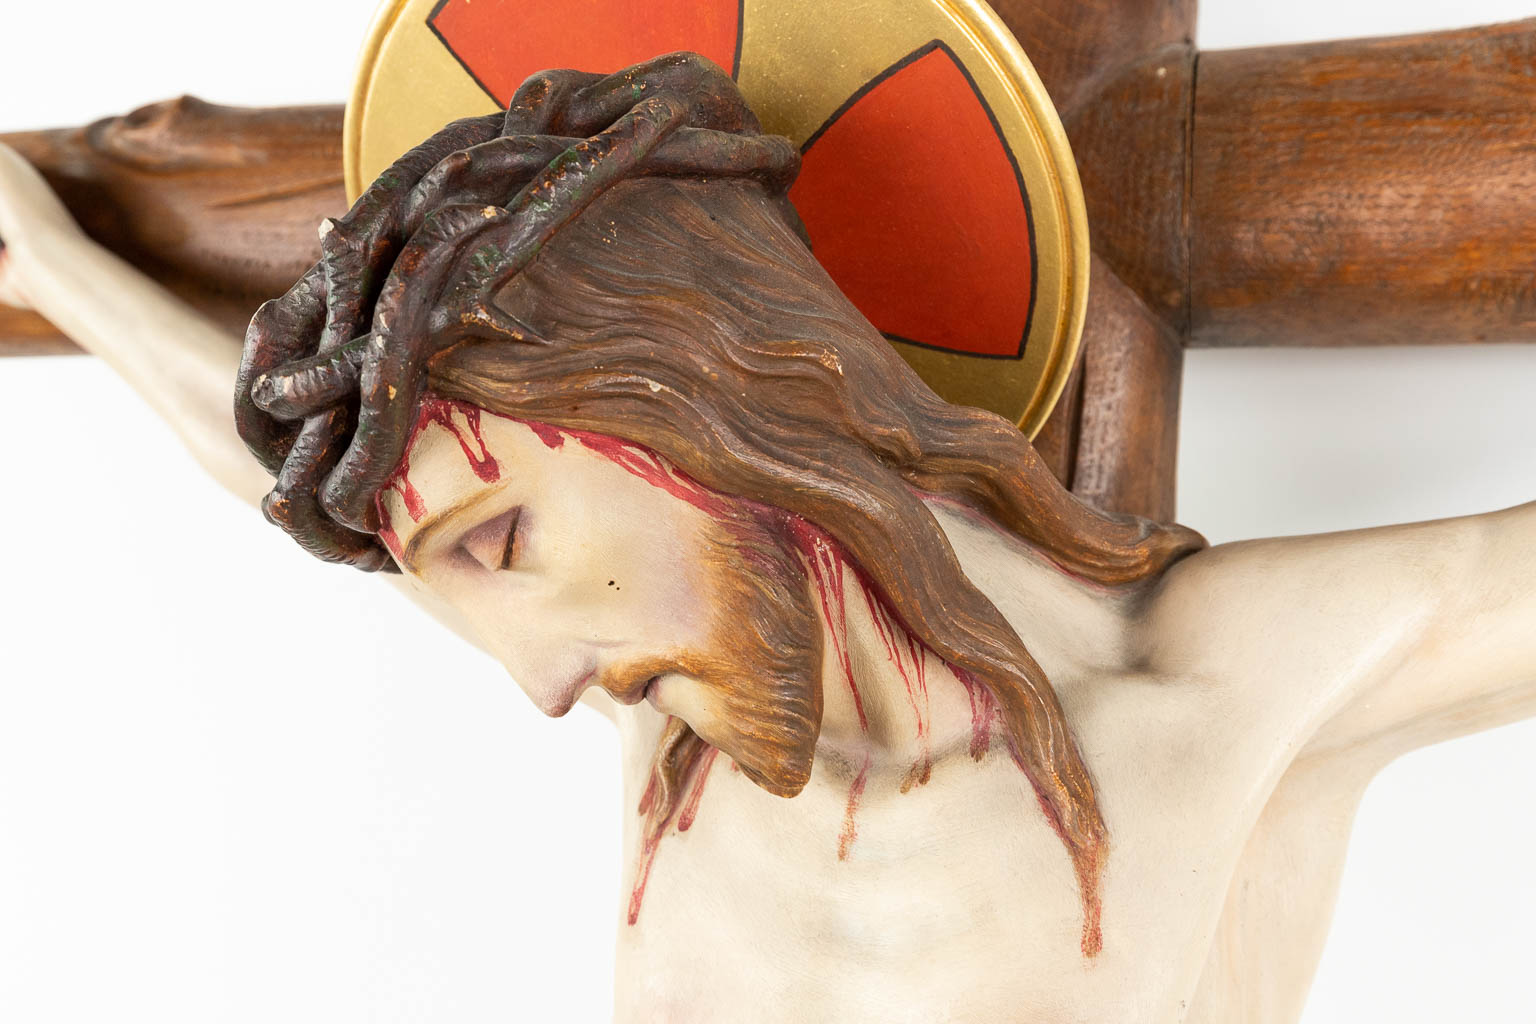 Een groot kruisbeeld, met een corpus gemaakt uit gepatineerd plaaster, gemonteerd op een kruis gemaakt uit hout. (H:174cm)